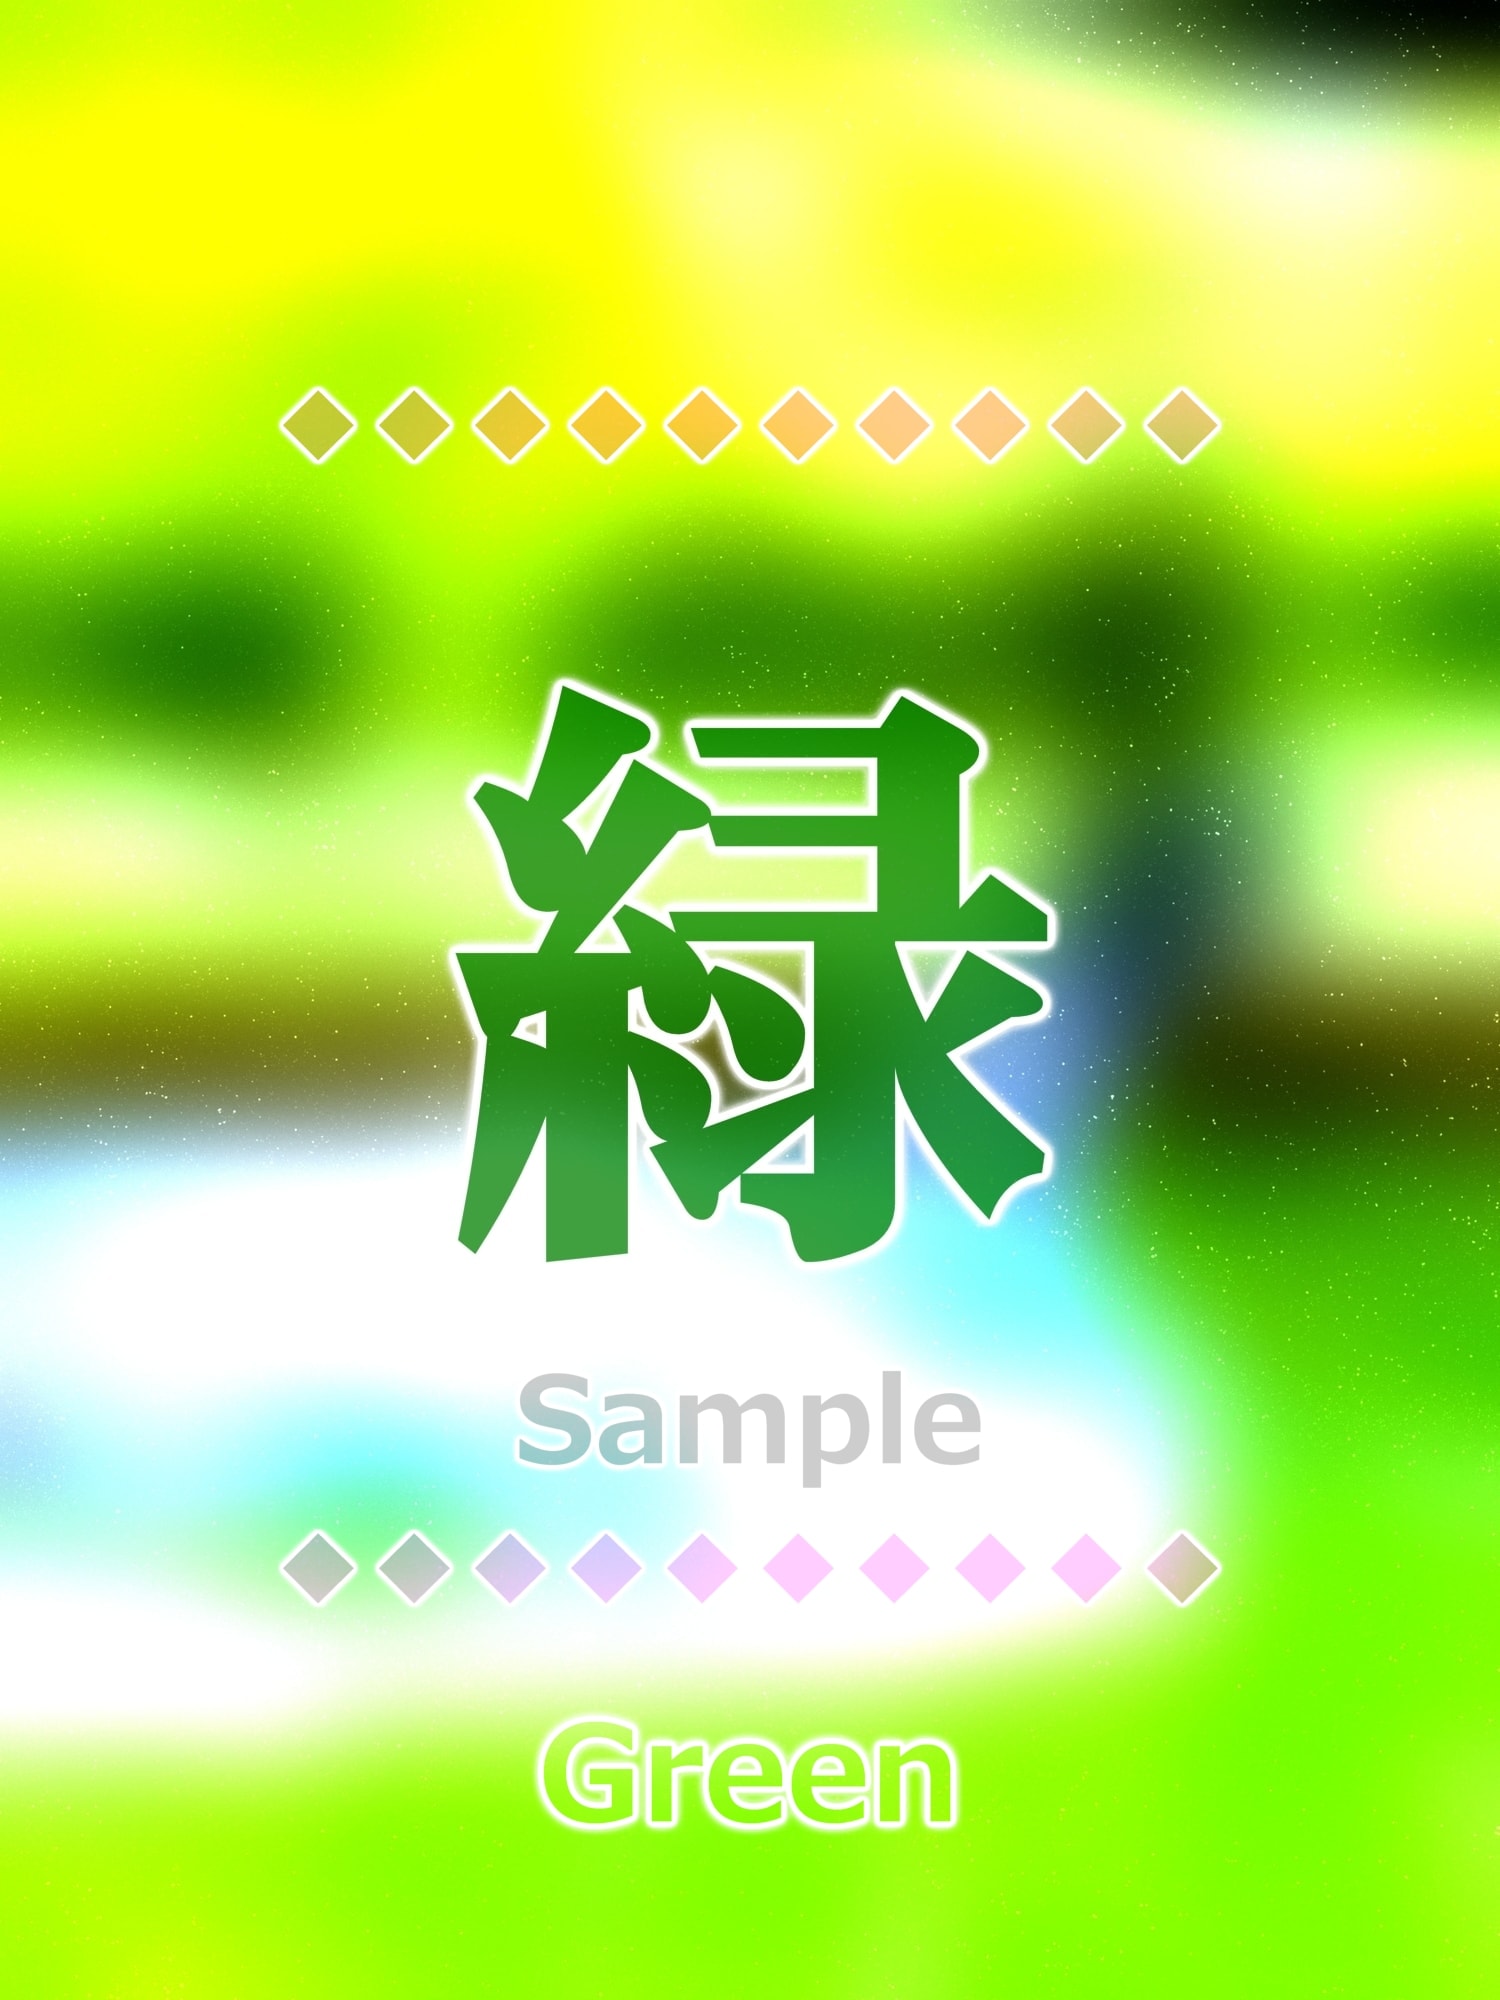 緑 green Kanji good luck charm amulet art glossy